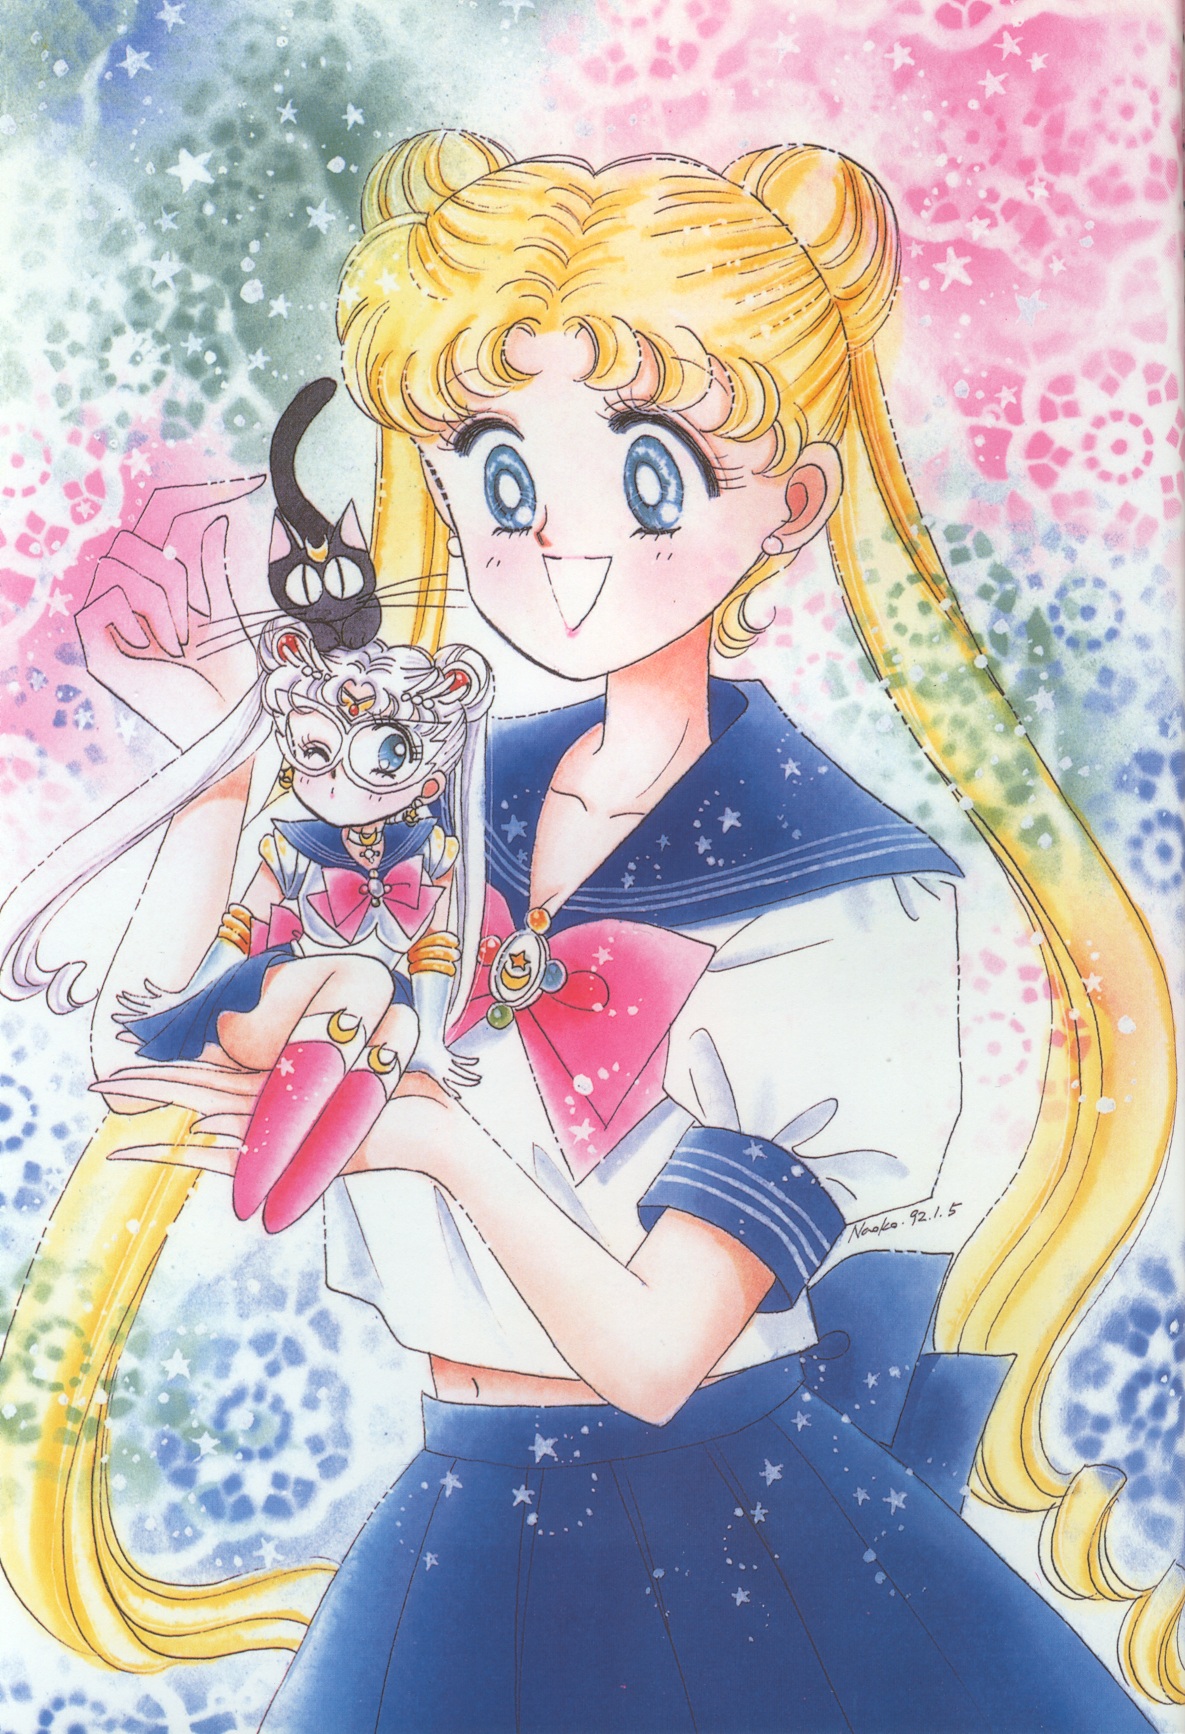 Sailor Moon, Vol. 1 by Naoko Takeuchi